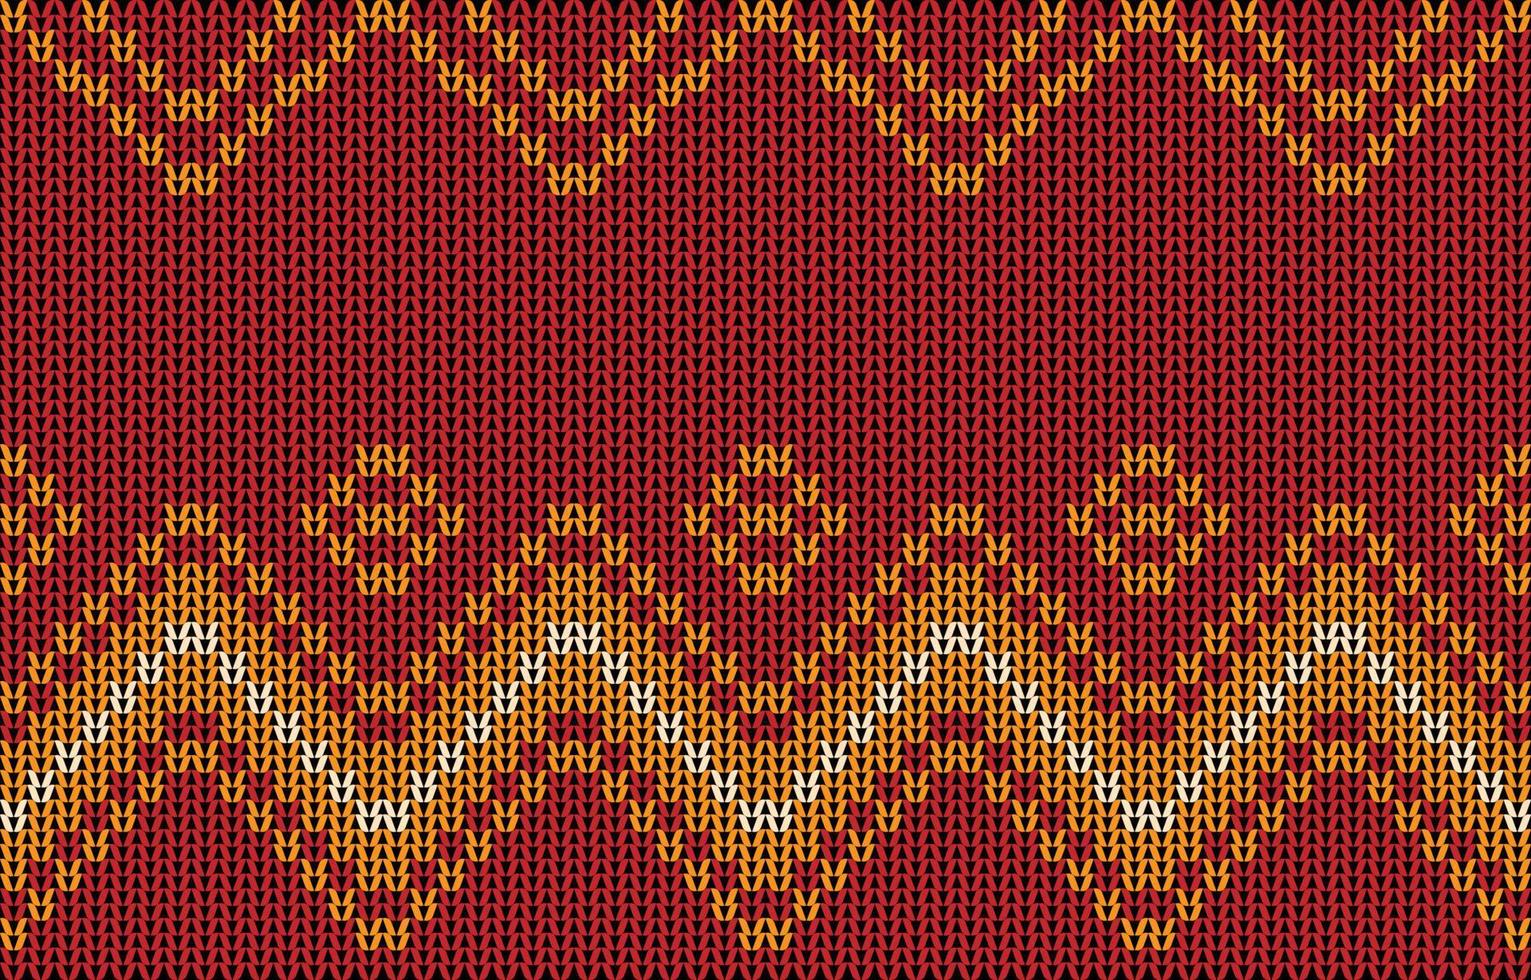 tegel röd Färg stickning textil- mönster. abstrakt geometrisk linje tyg sömlös grafisk Ränder teckning sticka mönster Kläder bakgrund. modern retro design linje grafisk broderi stil. vektor